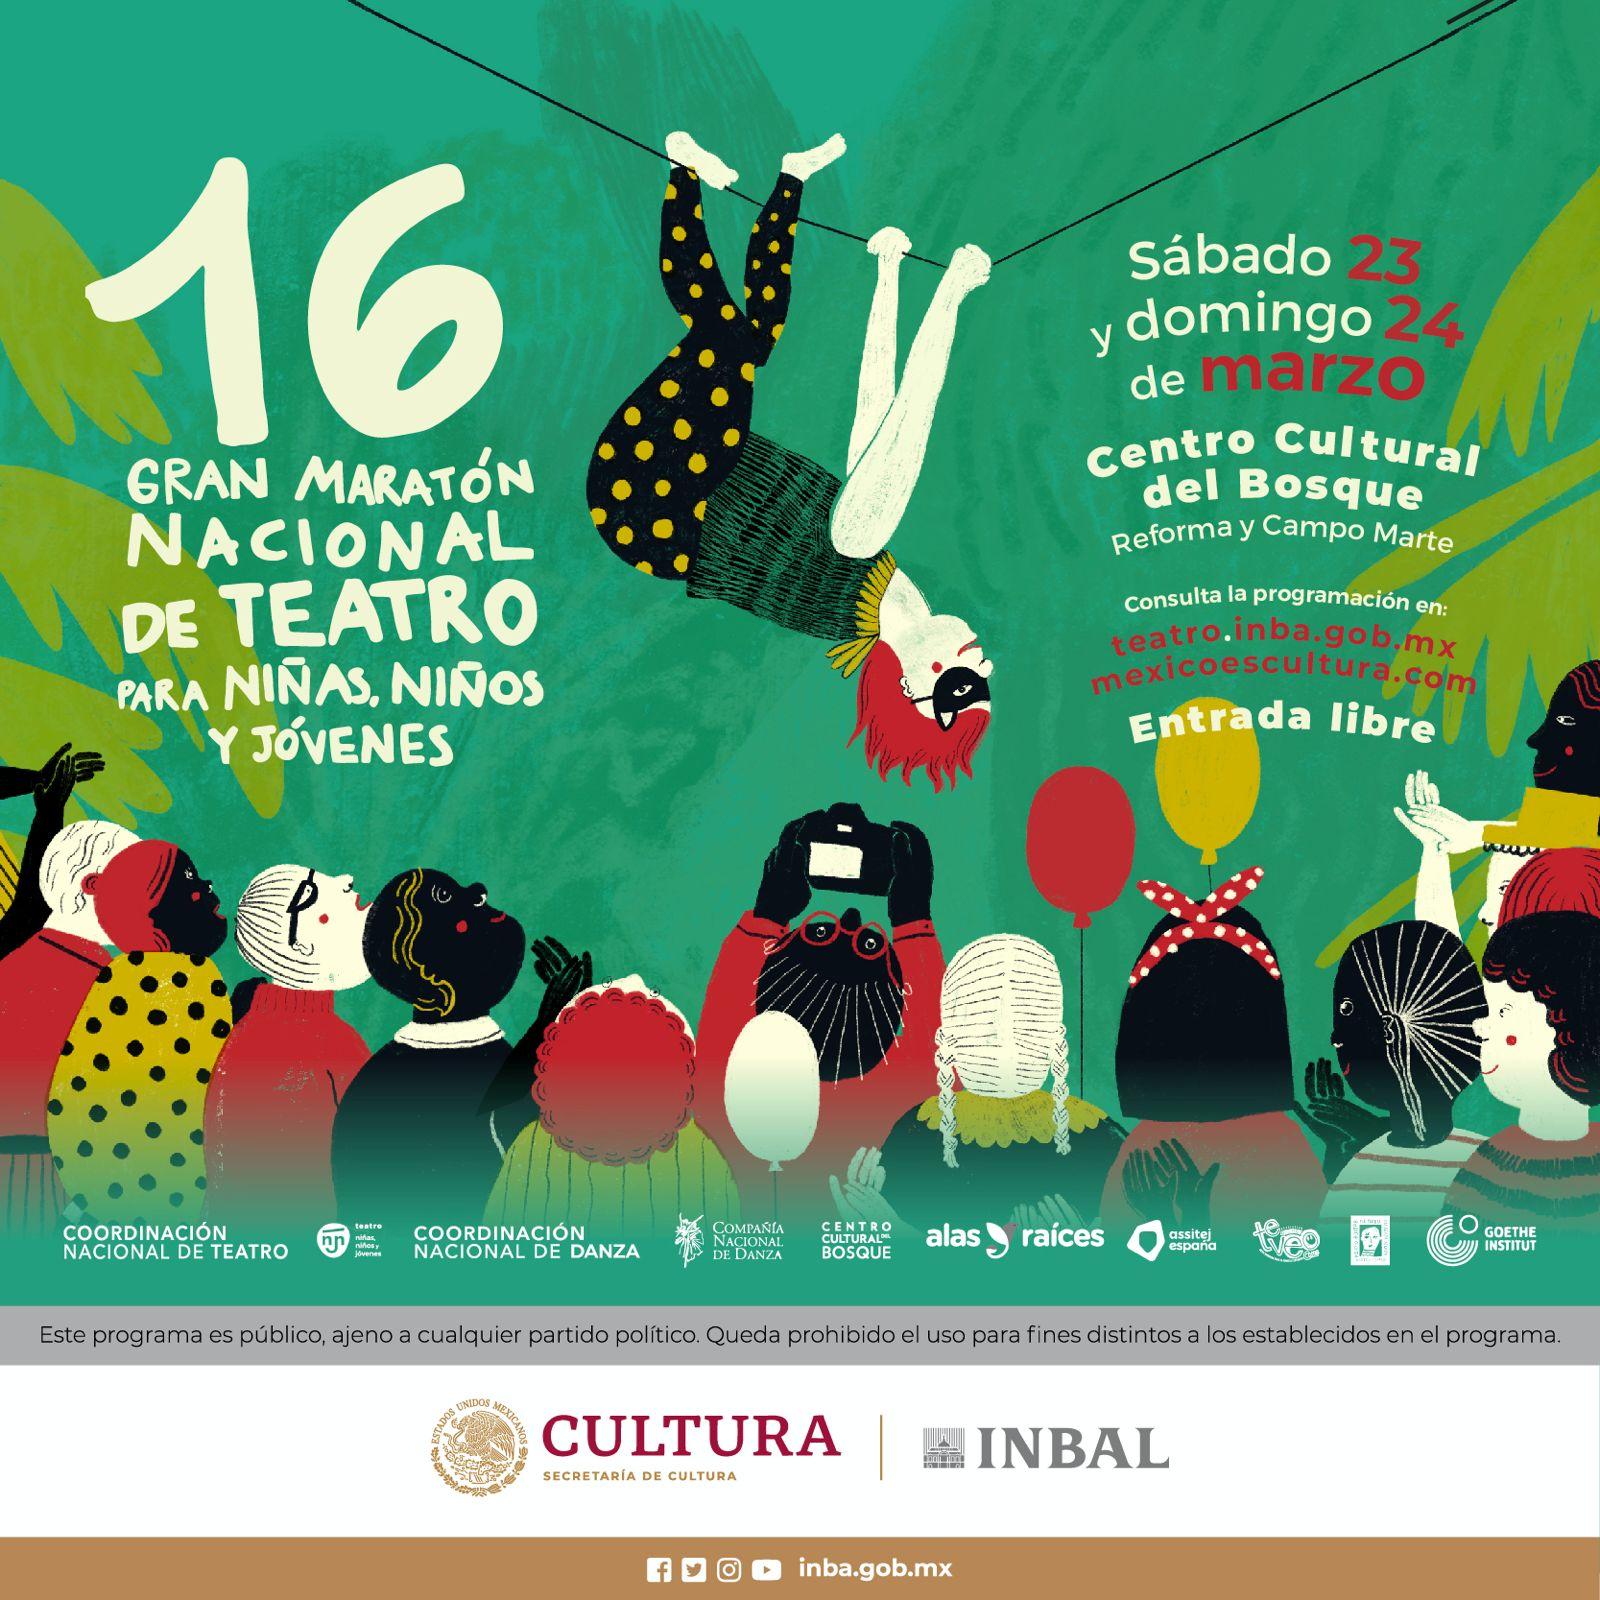 墨西哥庆祝第 16 届儿童和青少年马拉松戏剧节